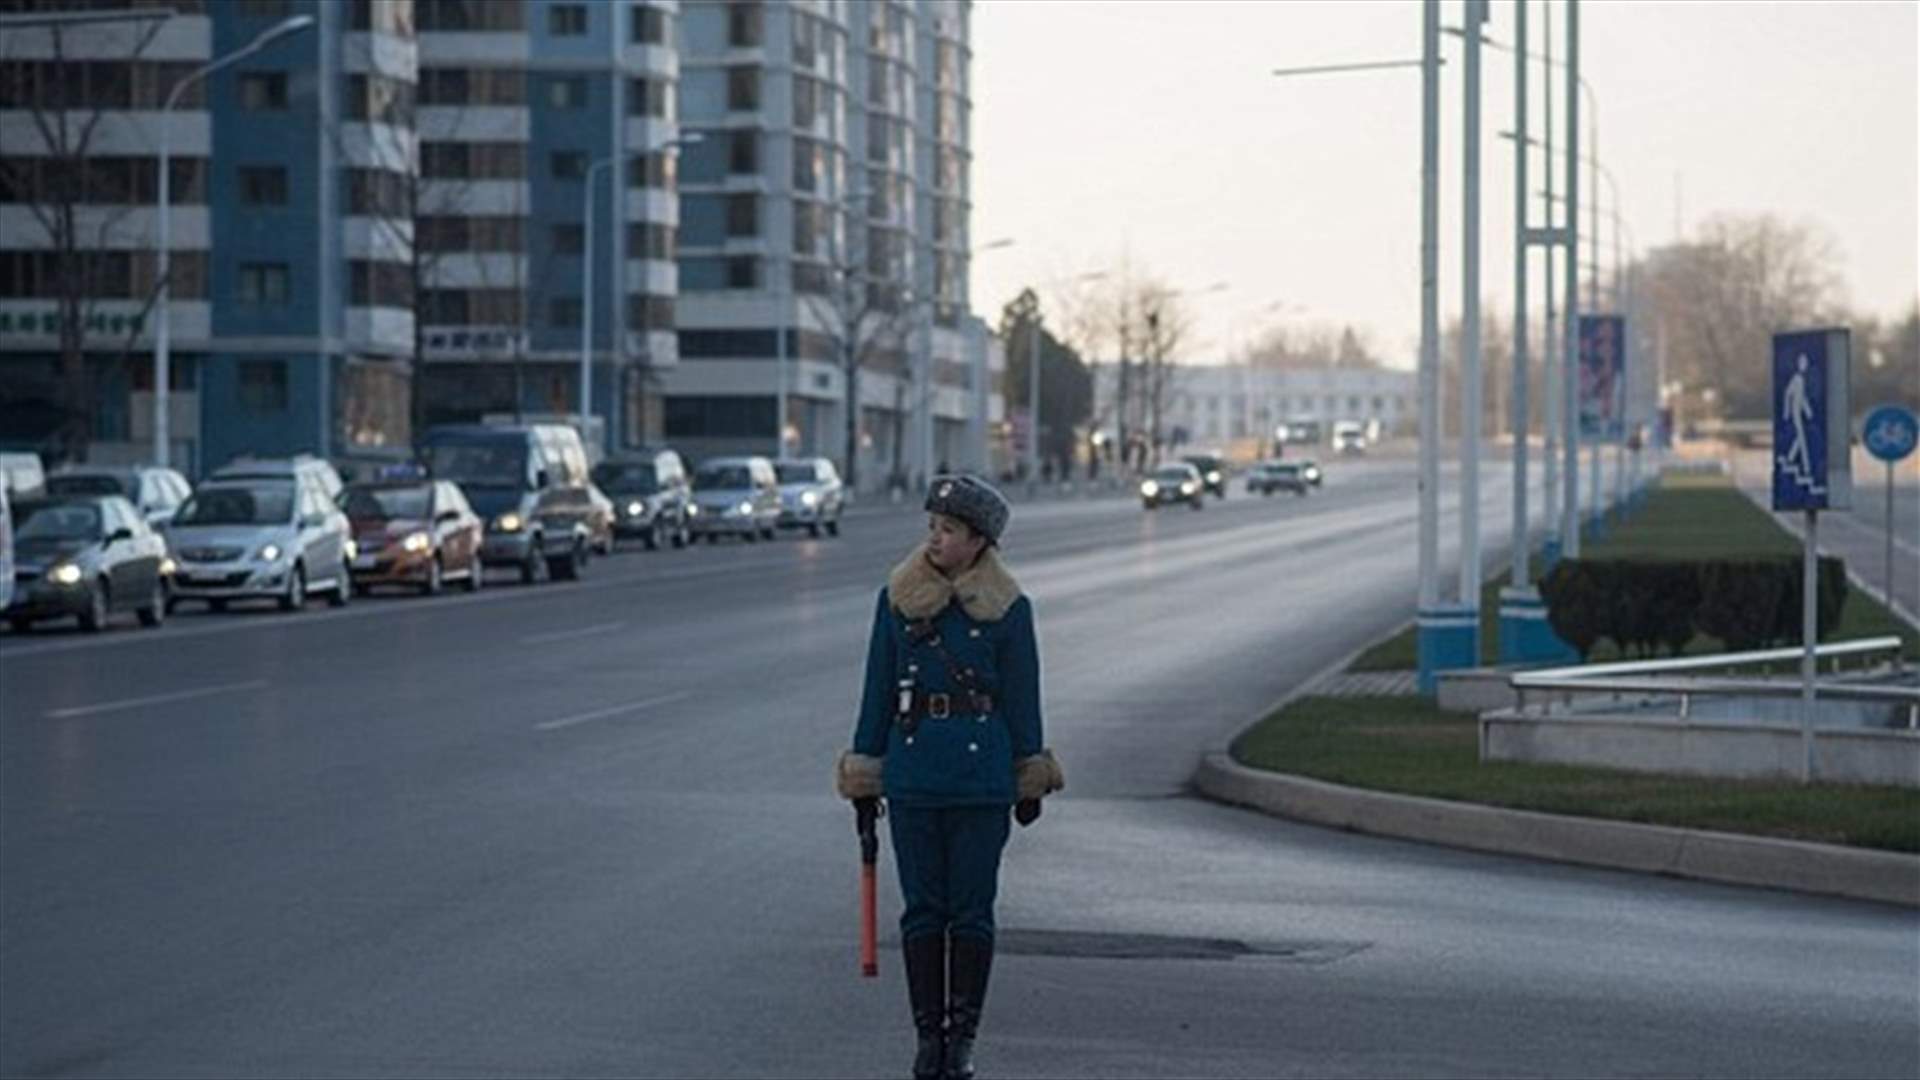 بالصور: من عارضات أزياء إلى شرطيات مرور... إنهن نساء كوريا الشماليّة!